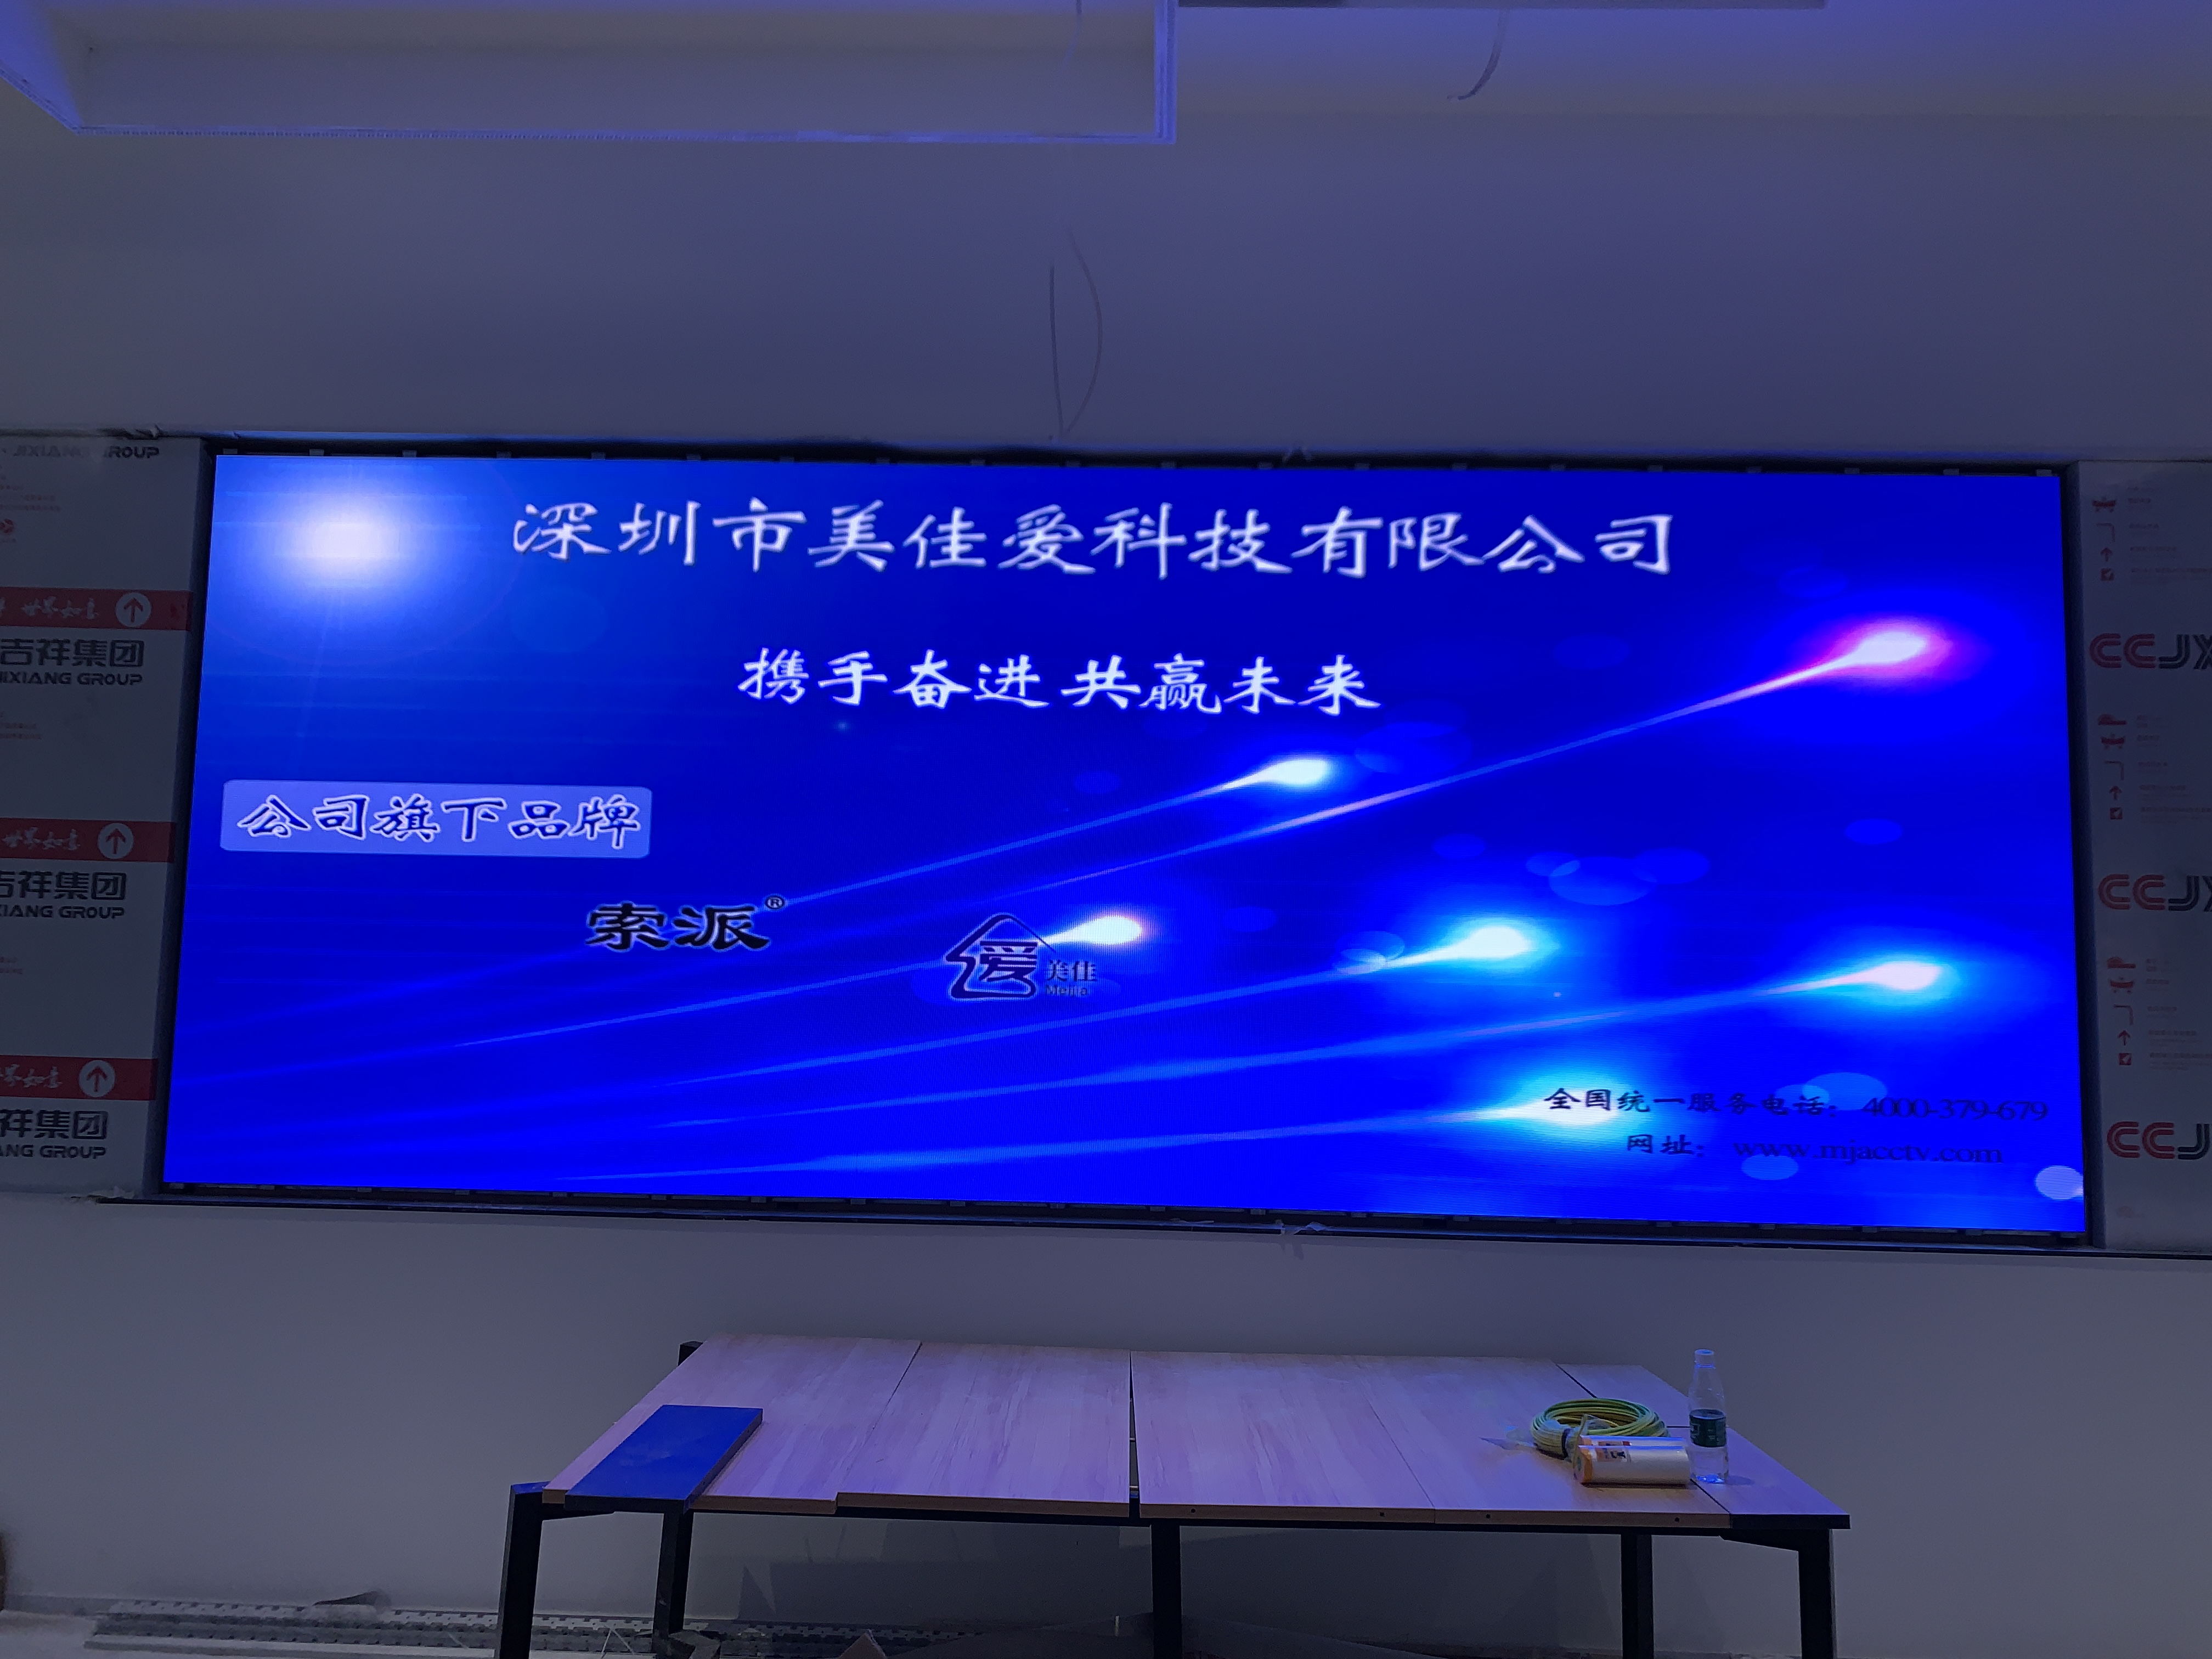  廣東全彩LED顯示屏安裝項目